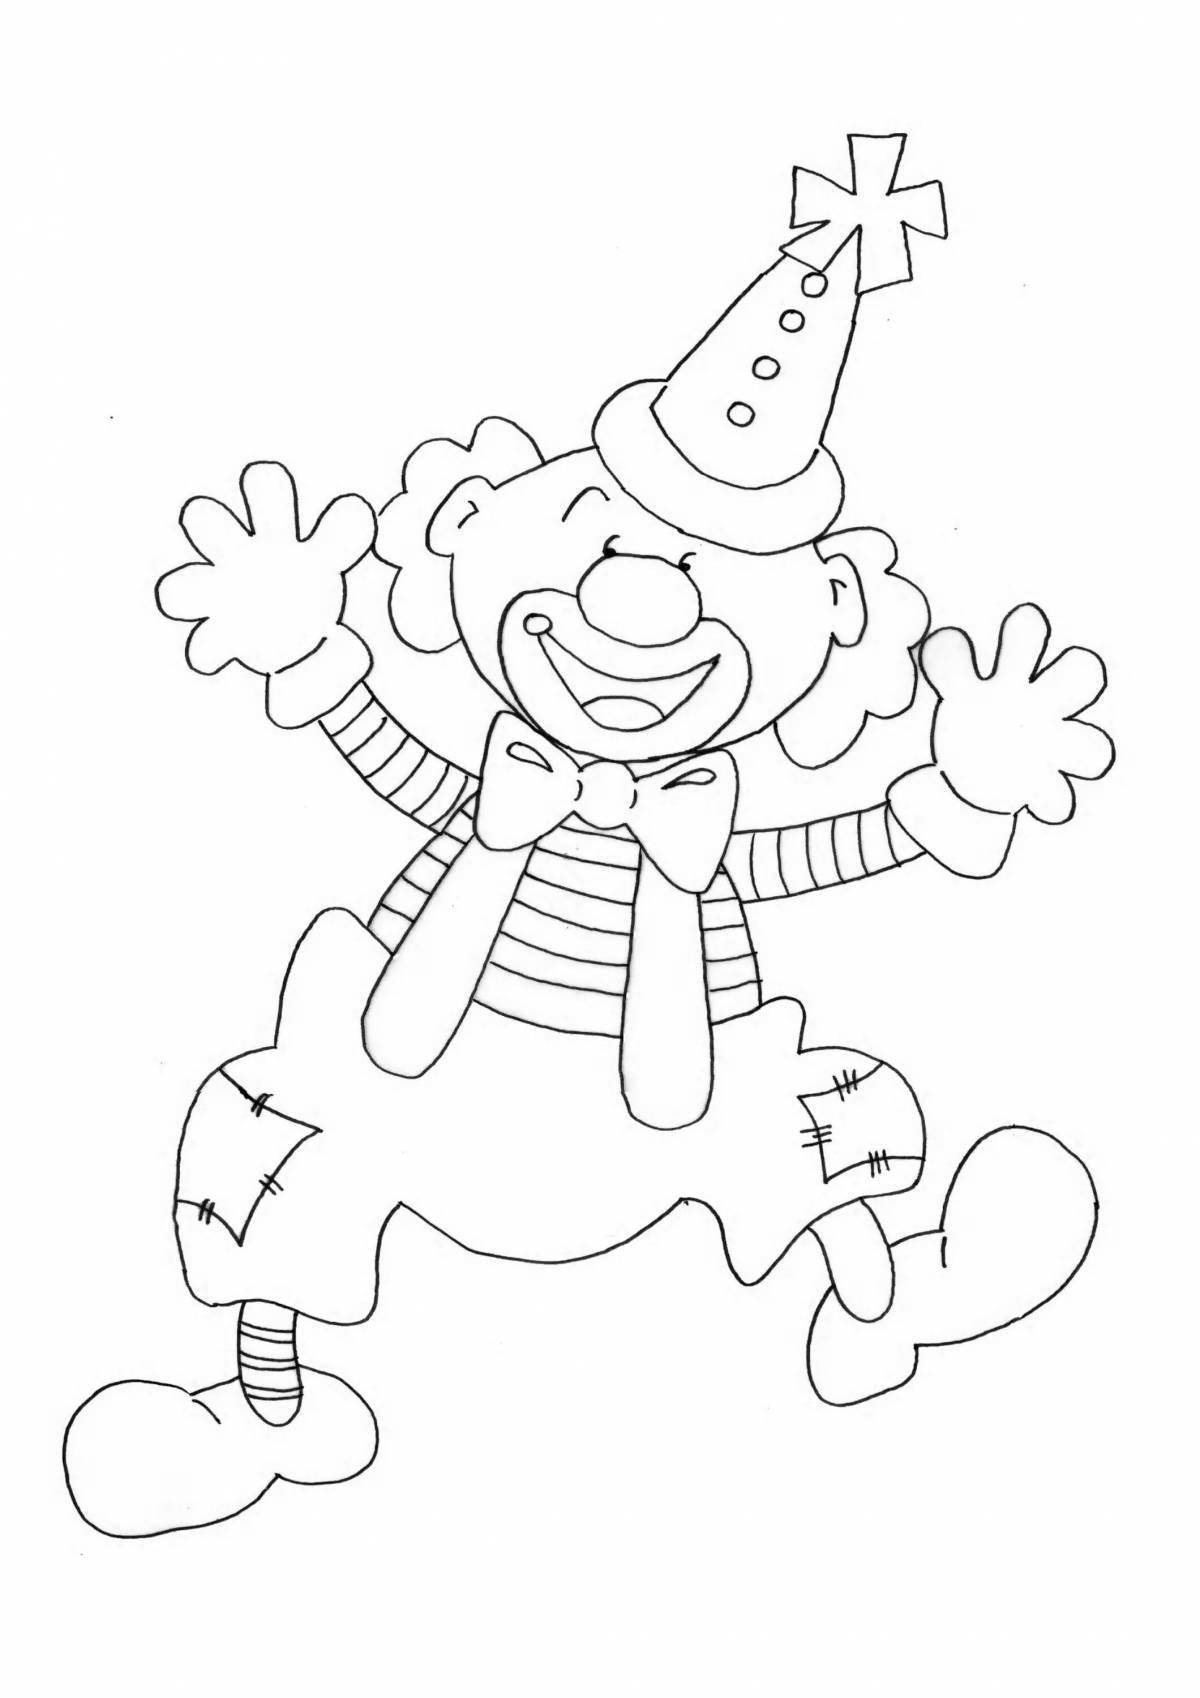 Развлекательная раскраска клоуна для детей